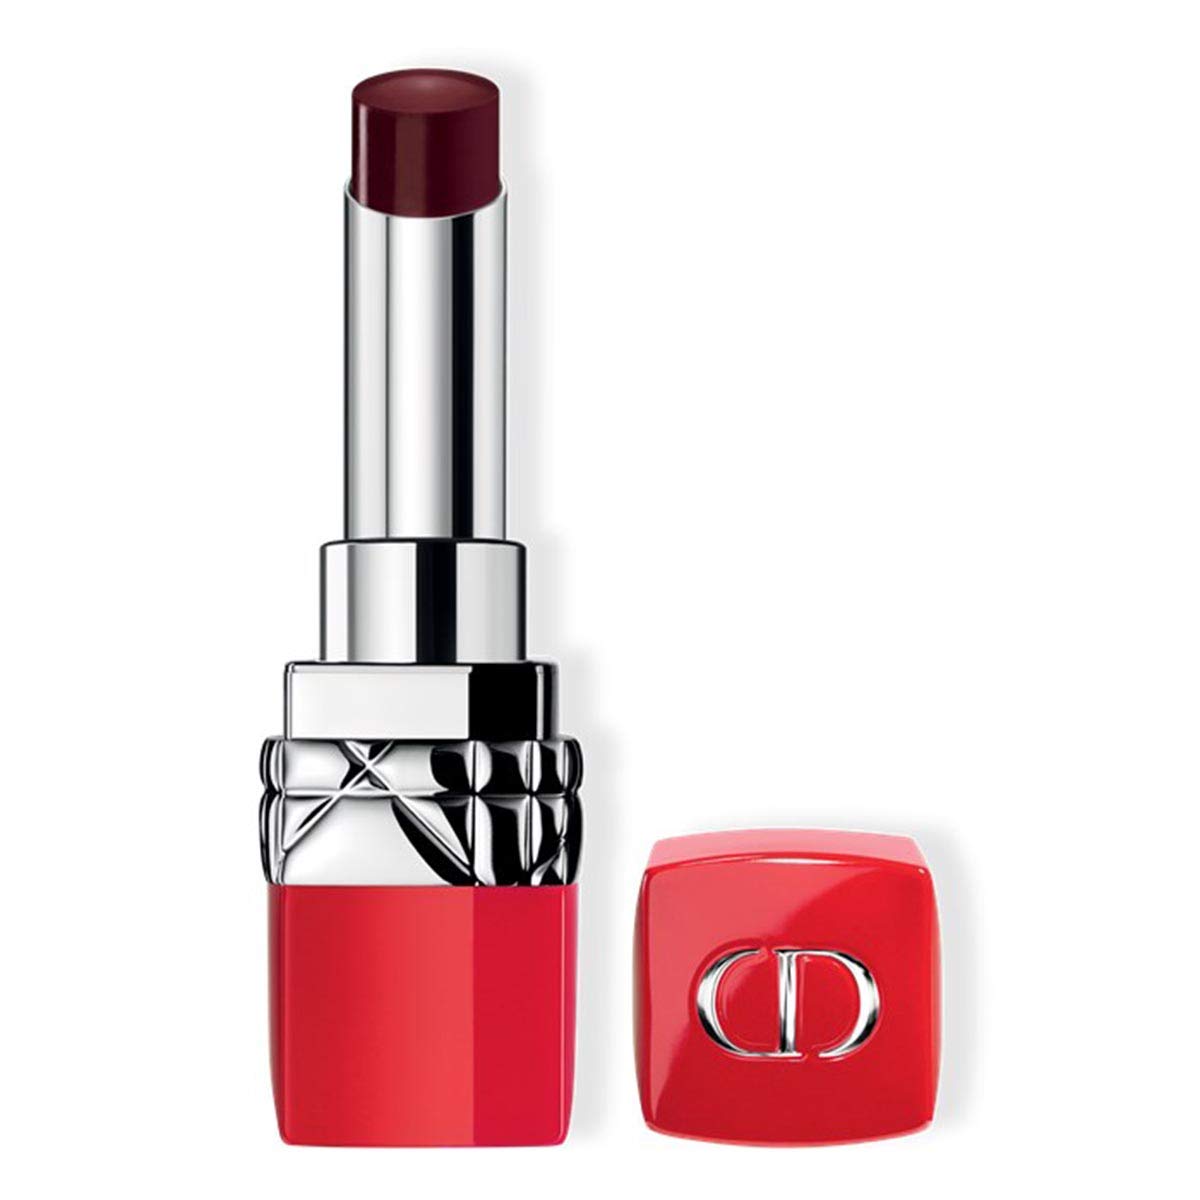 Rossetto Dior Ultra Rouge Lunga Durata Tester con tappo ammaccato